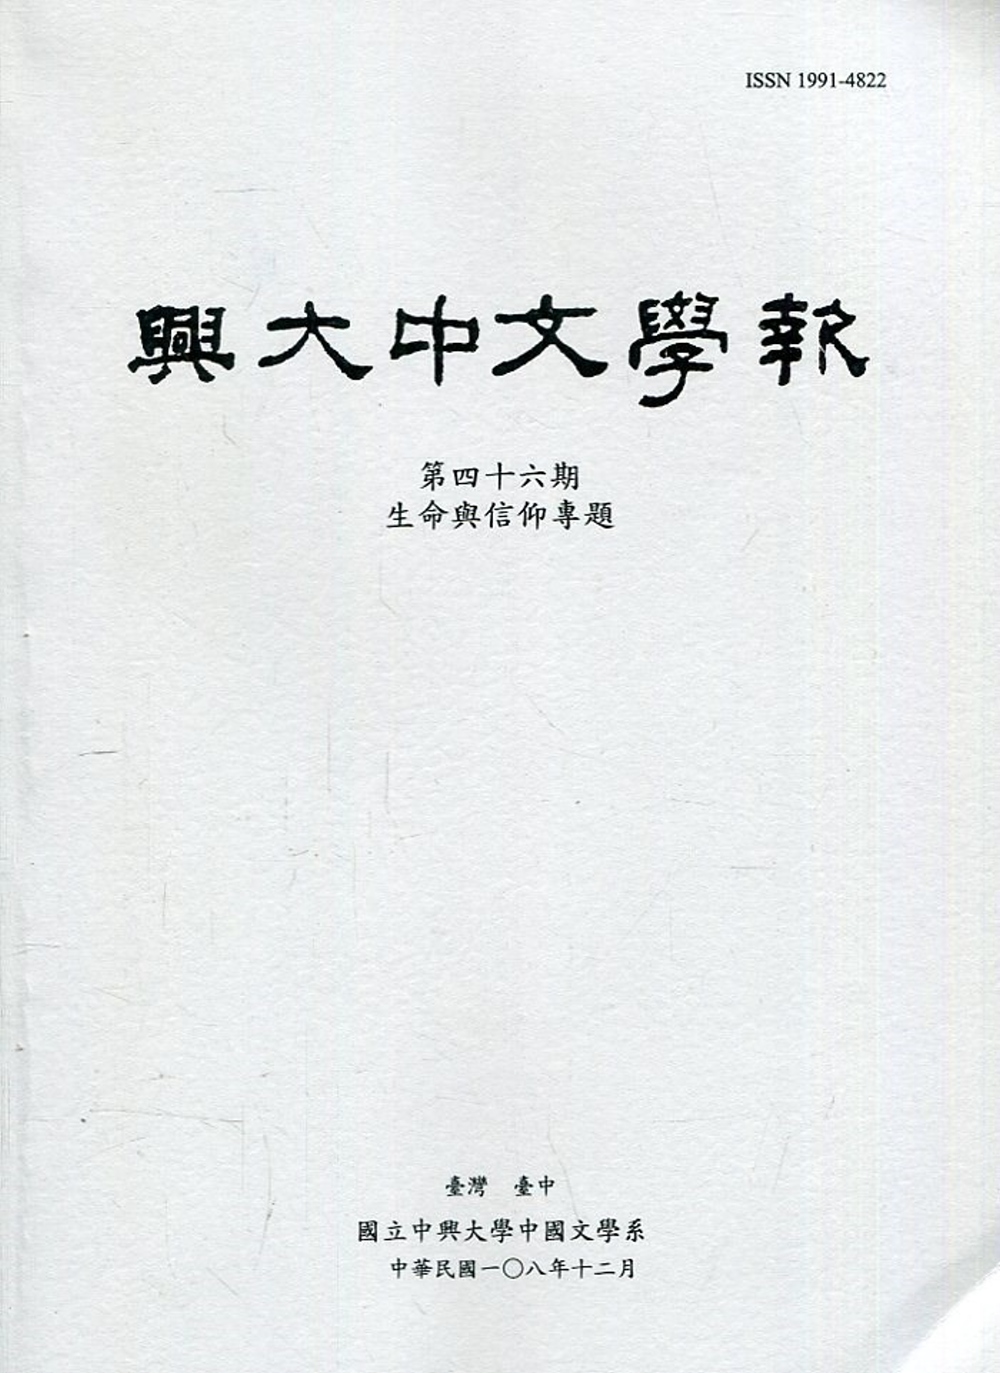 興大中文學報46期(108年12月)